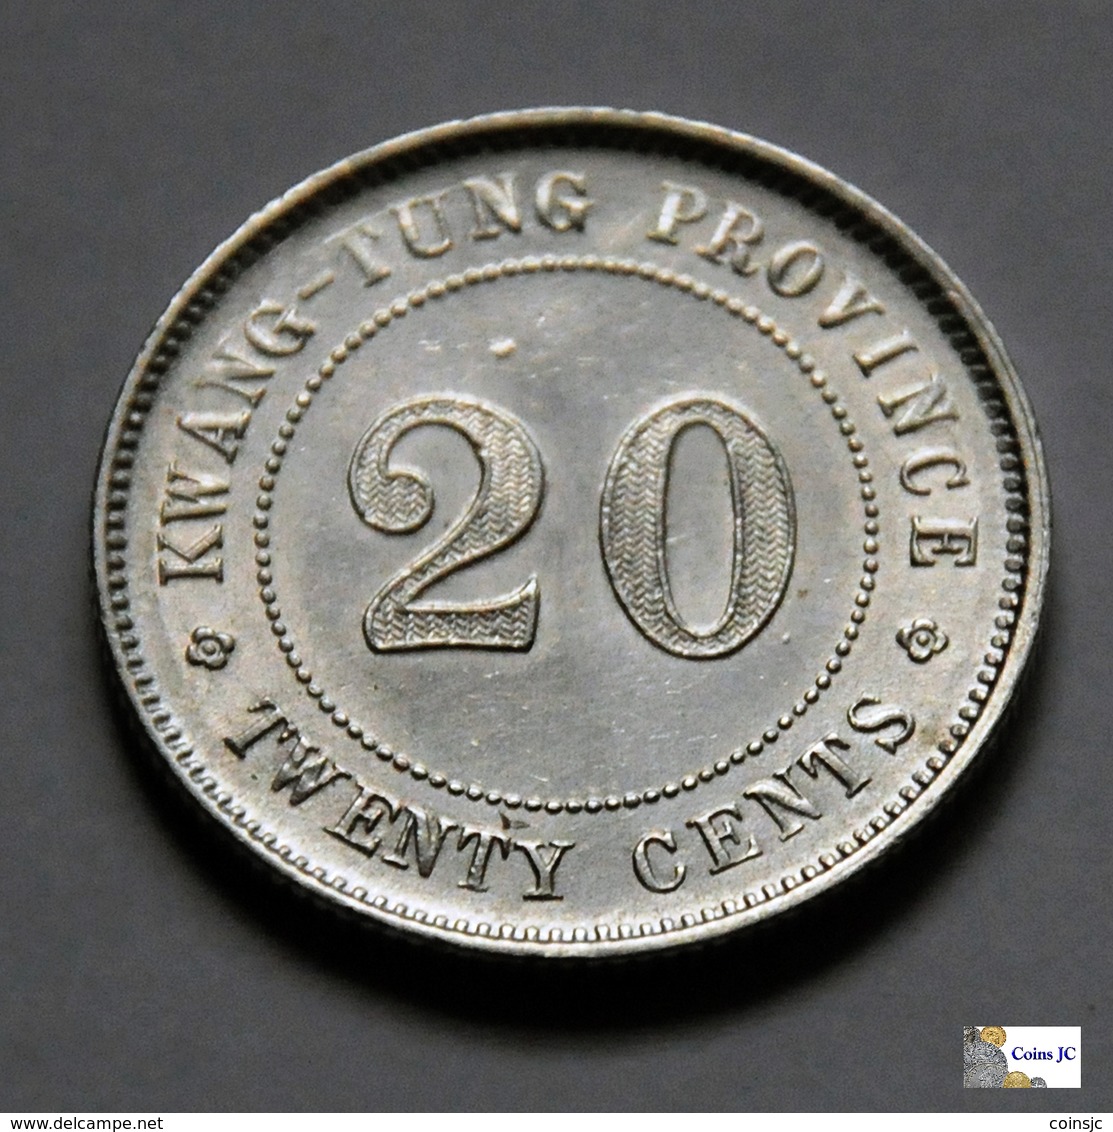 China - Kwangtung Province - 20 Cents - 1912-1924 - China